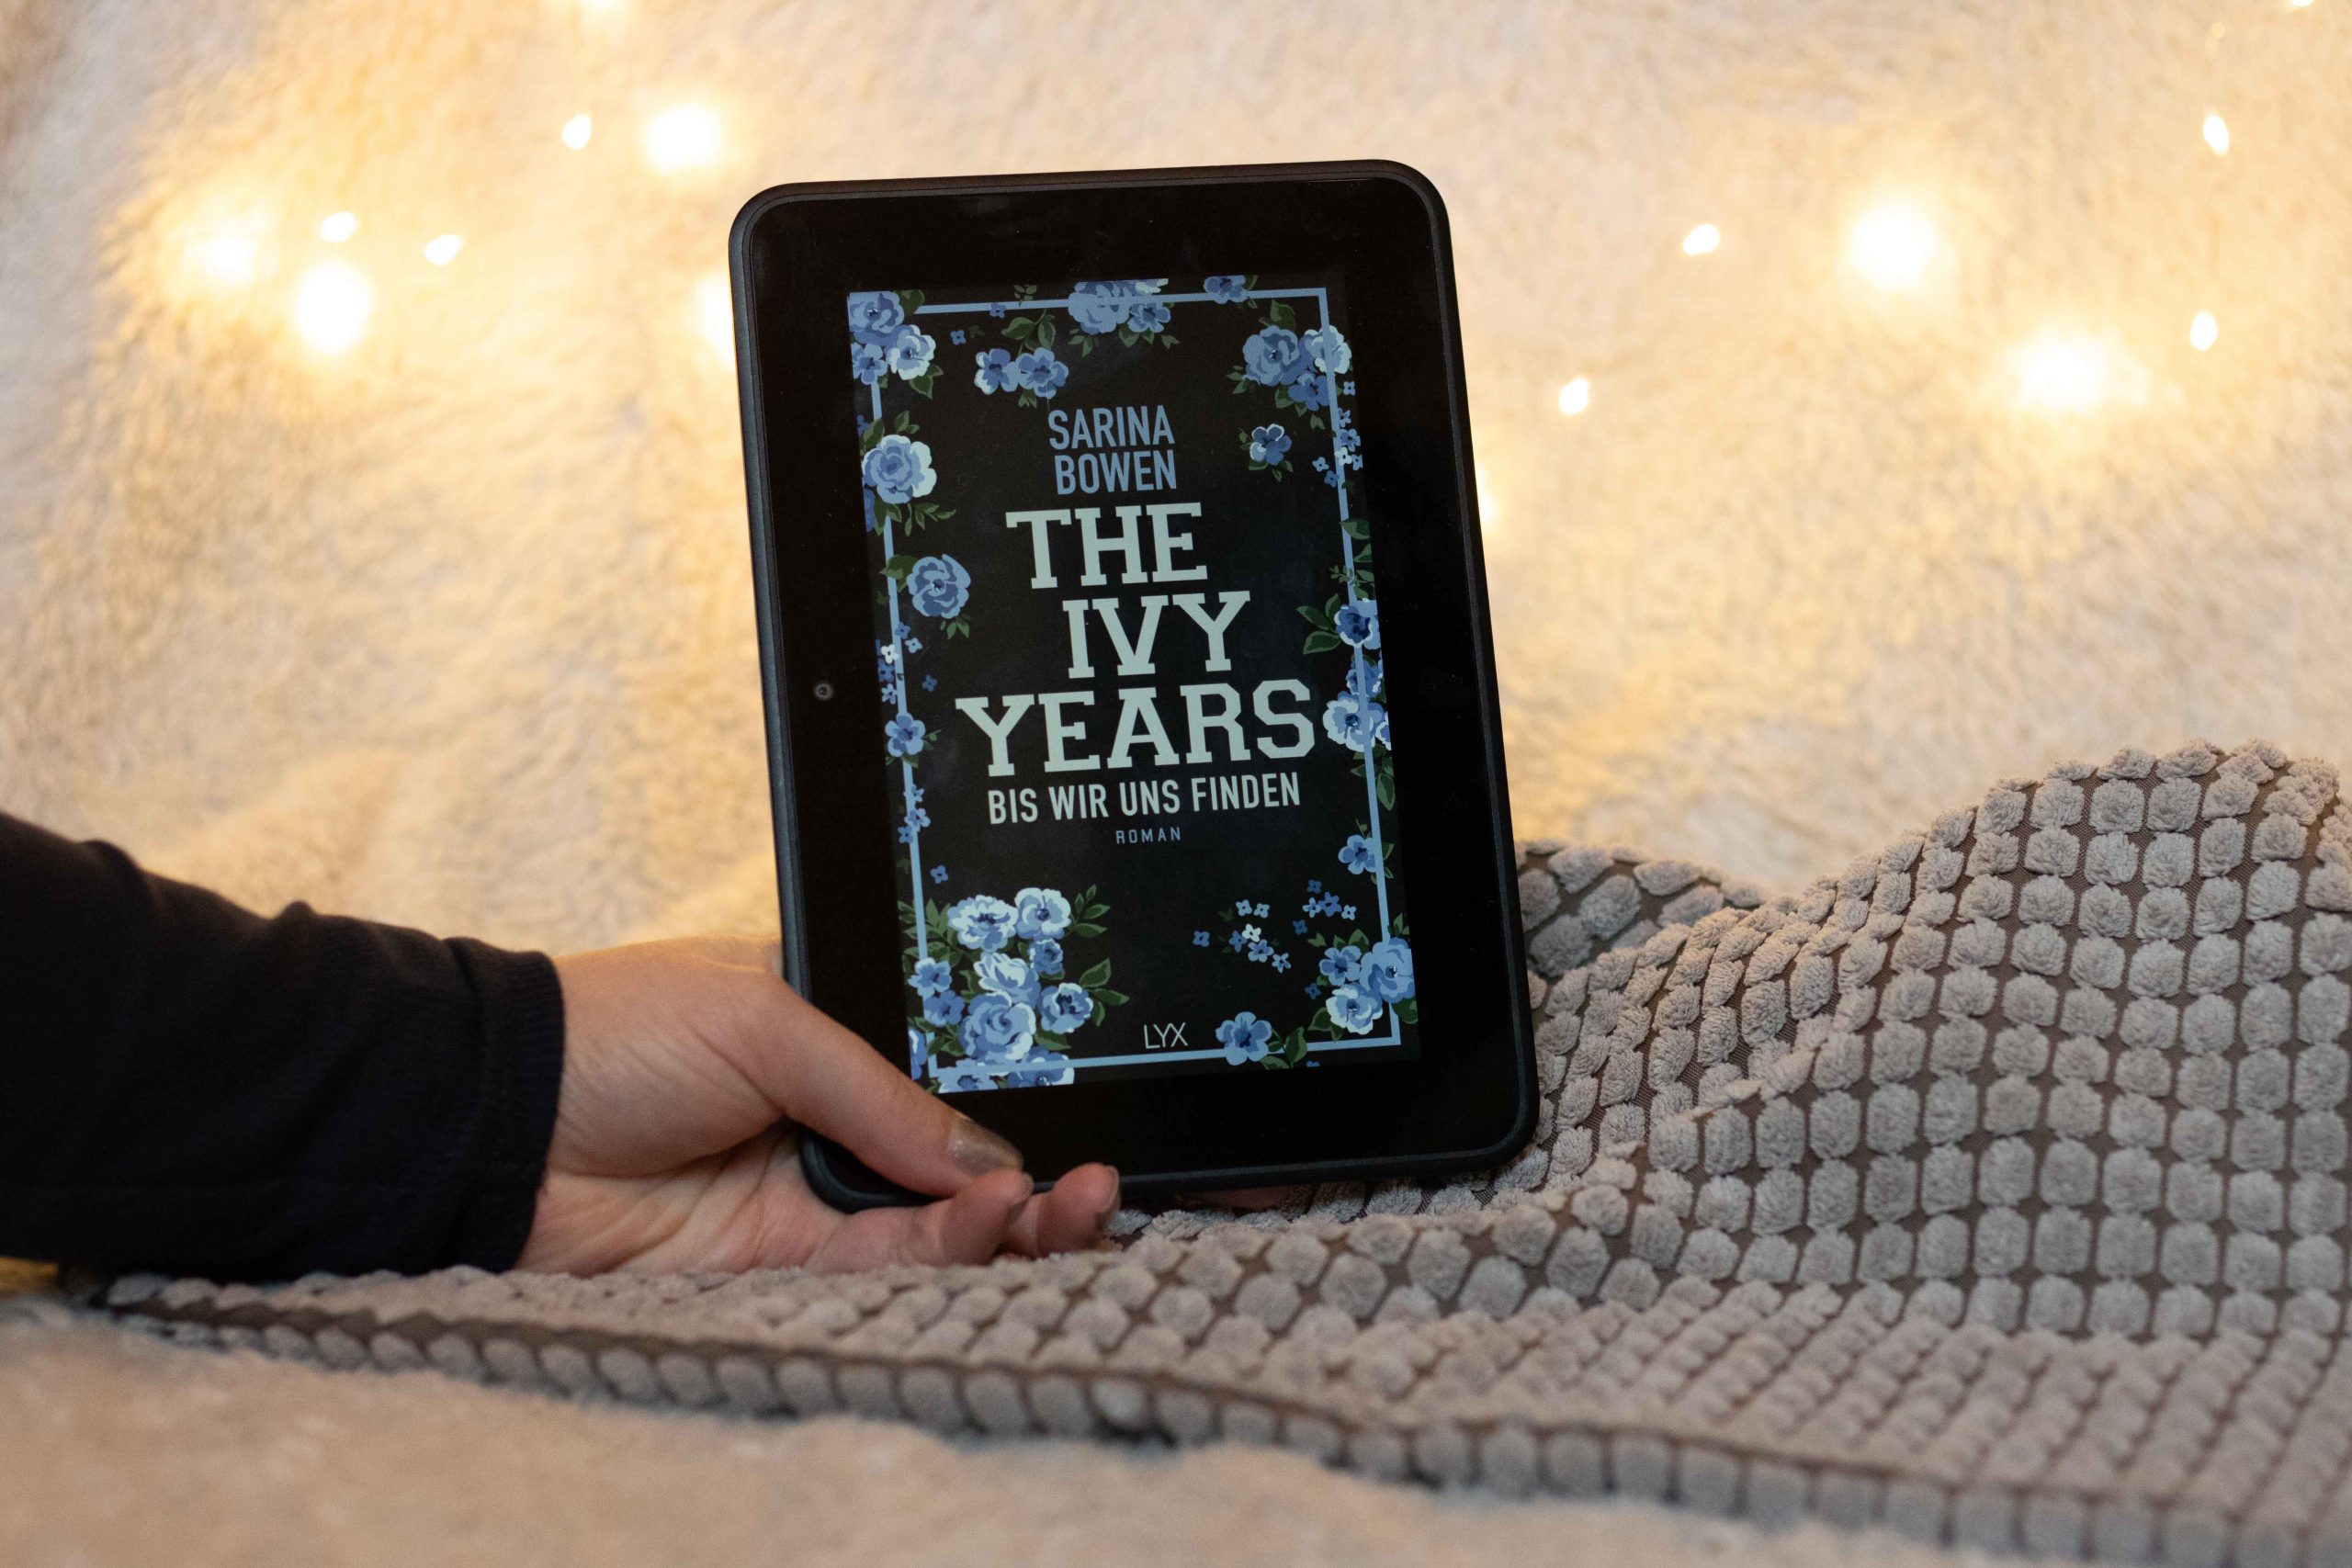 The Ivy Years – Bis wir uns finden | Sarina Bowen